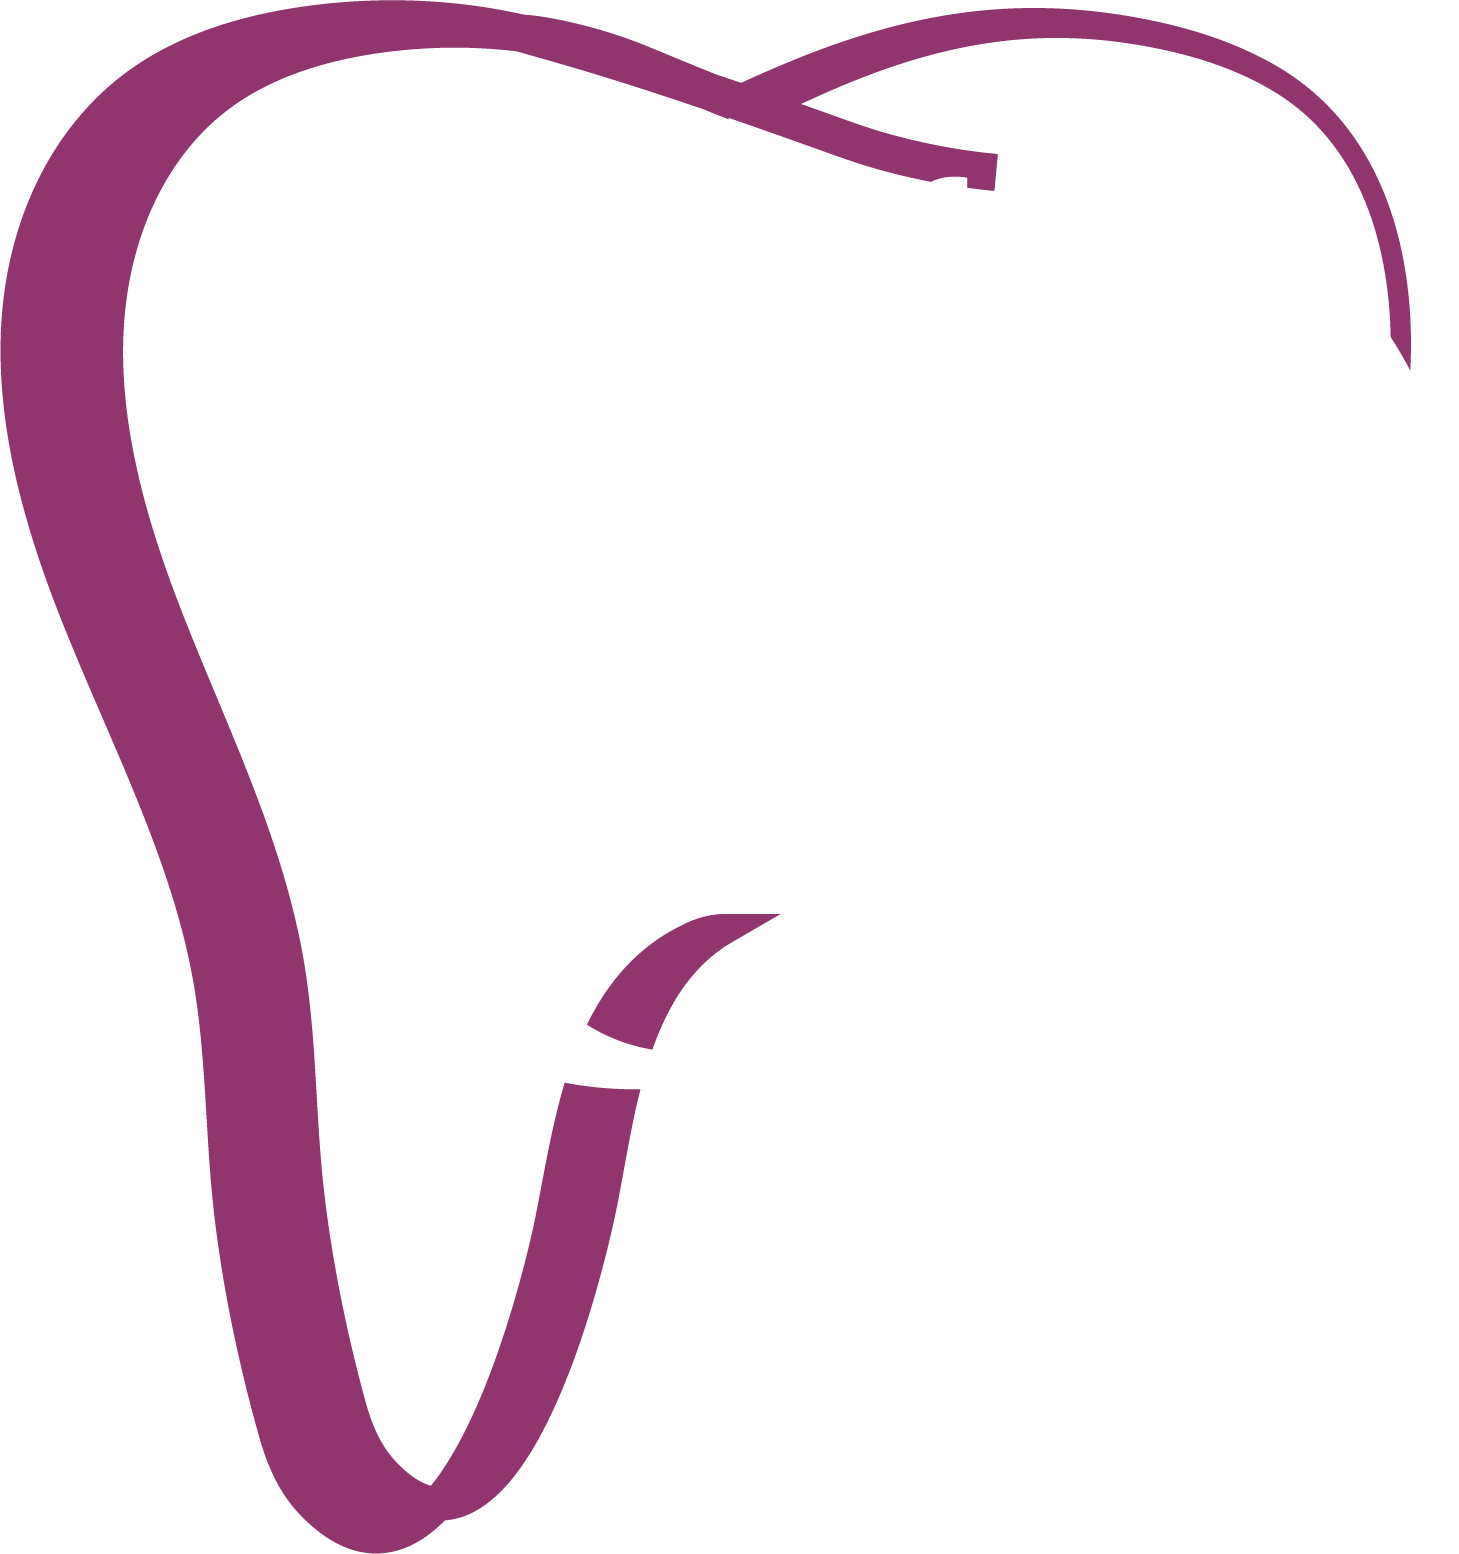 Confi dental clinic logo